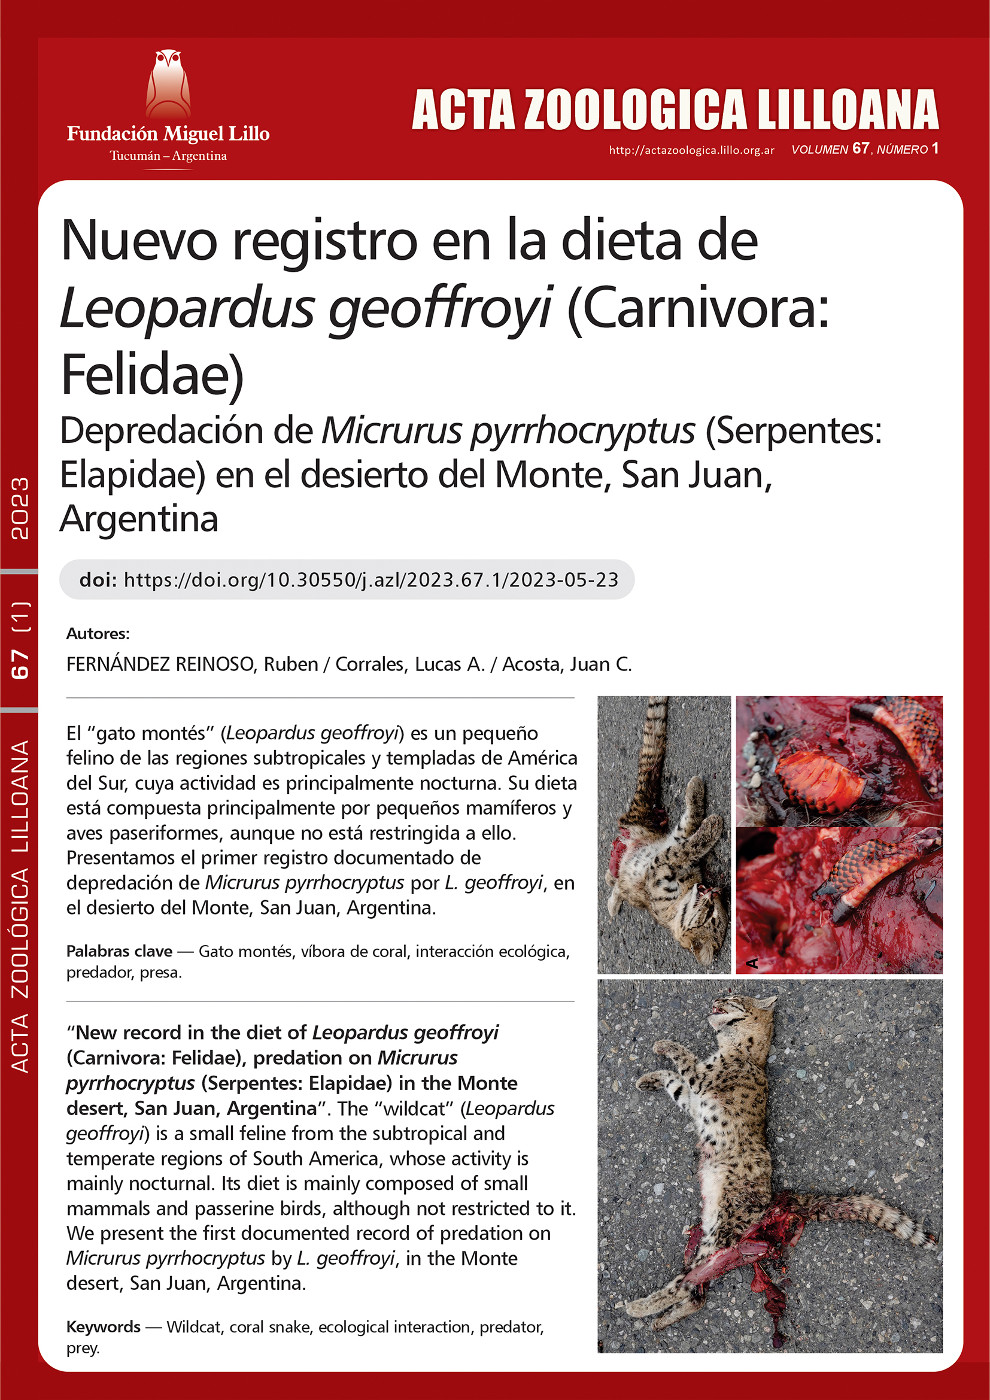 Nuevo Registro en la dieta de Leopardus geoffroyi (Carnivora: Felidae), depredación de Micrurus pyrrhocryptus (Serpentes: Elapidae) en el desierto del Monte, San Juan Argentina